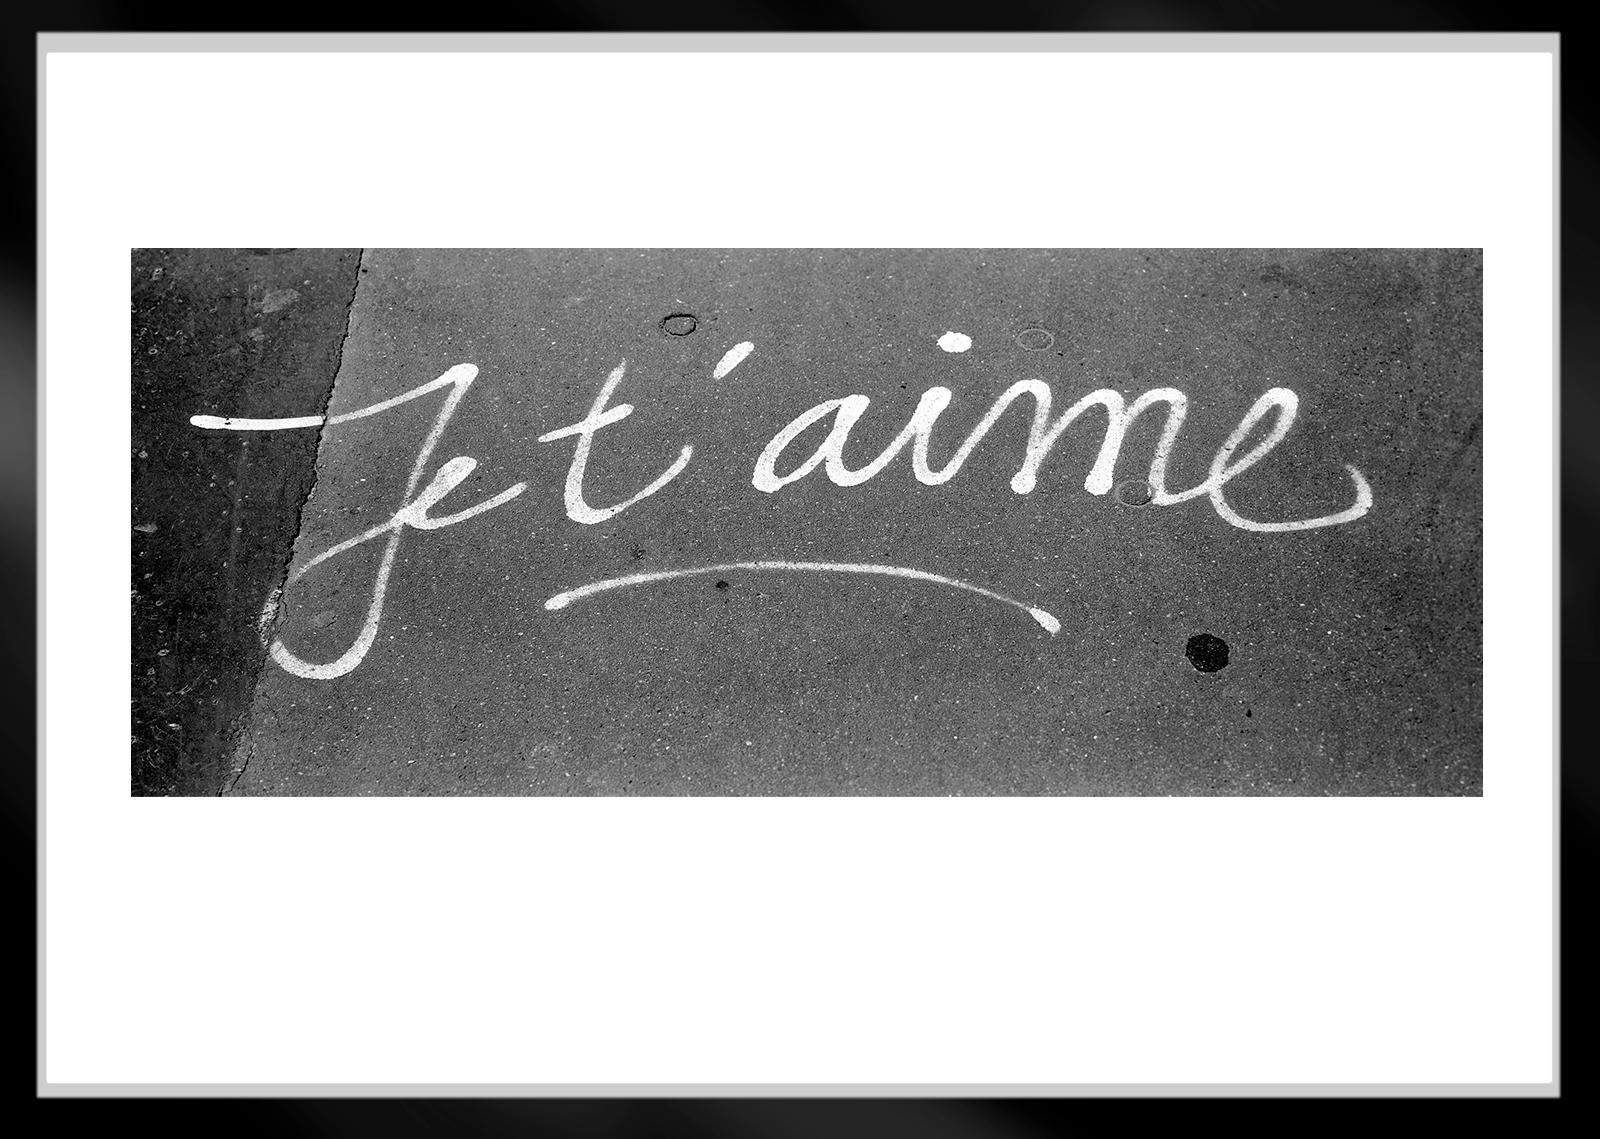 Je t'aime  ( Ich liebe dich )  - Limitierte Auflage Archivpigmentdruck, Auflage 15 

Handgeschrieben auf einem Pariser Bürgersteig, Paris, Frankreich.
Landschaftsformat.

Dies ist ein Archival Pigment Print auf Faserpapier (Hahnemühle Photo Rag®